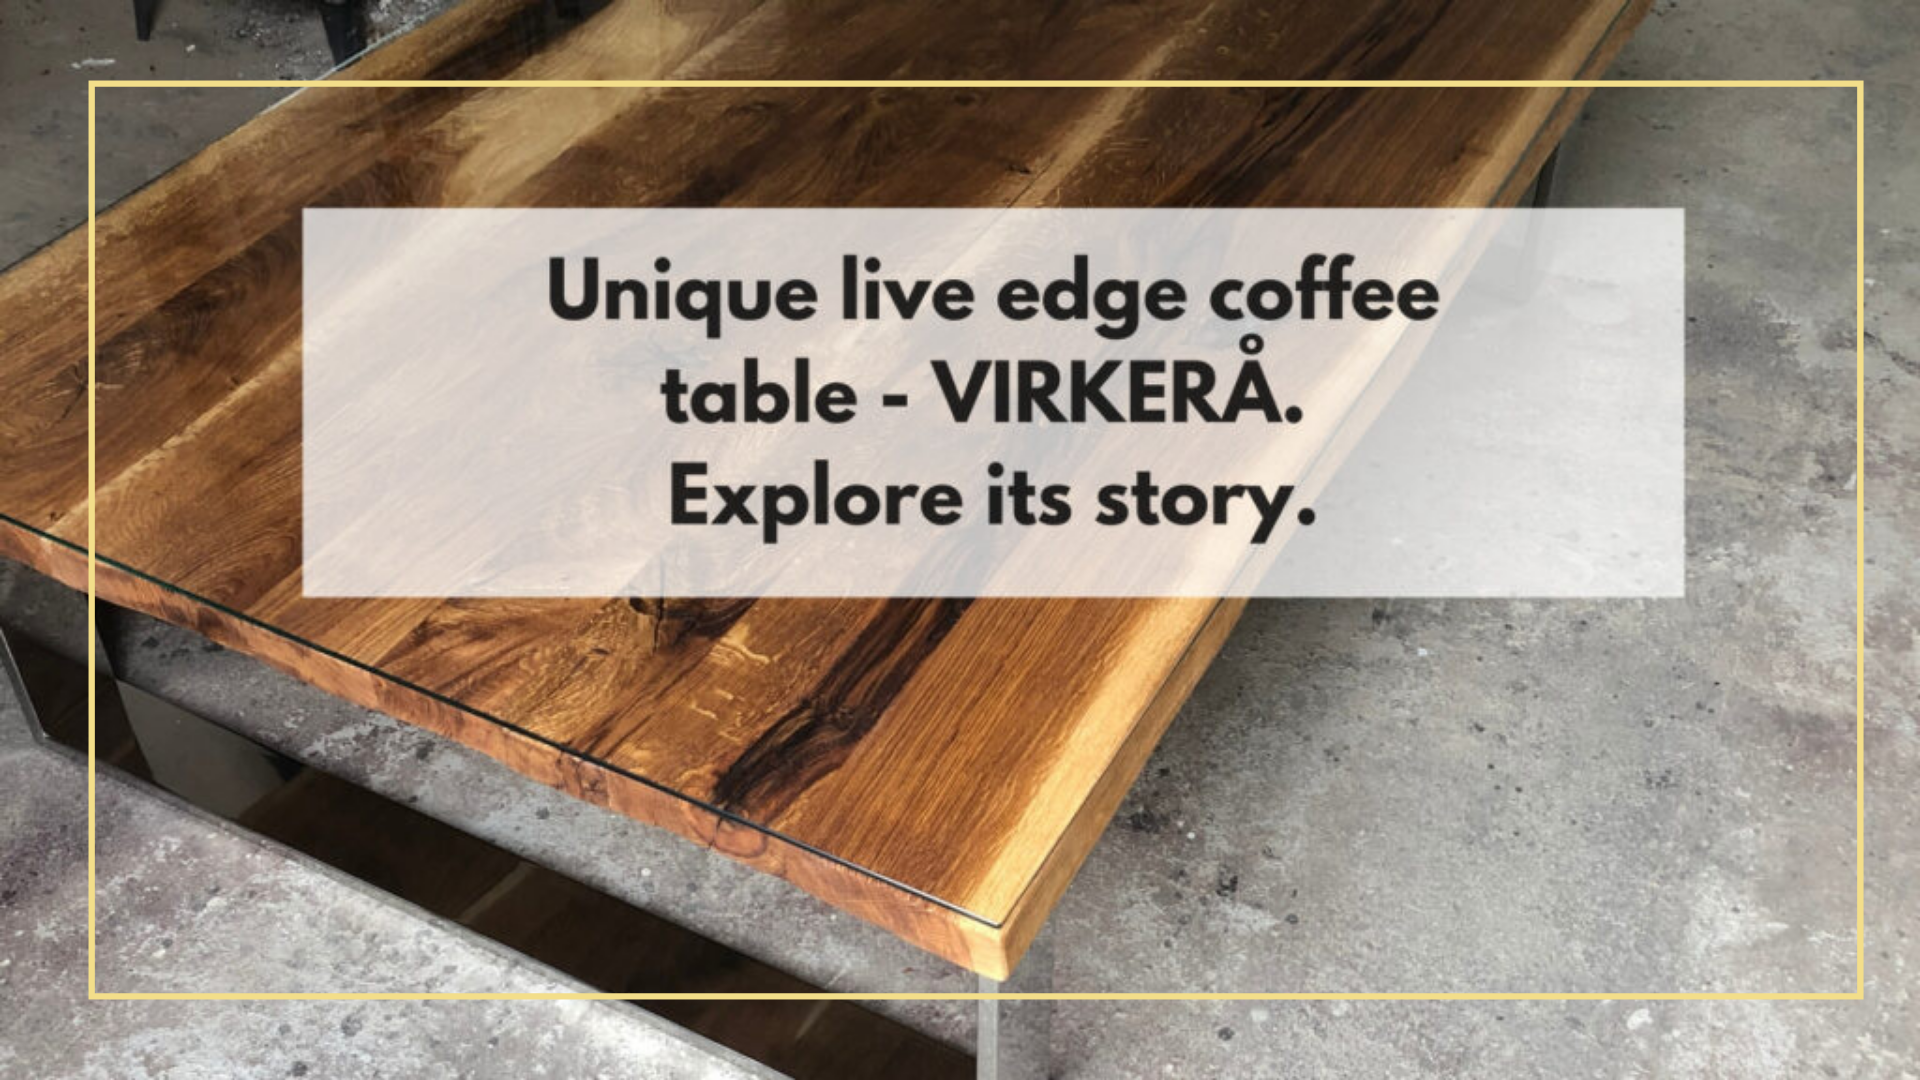 Unique live edge oak coffee table – VIRKERÅ. Explore its story